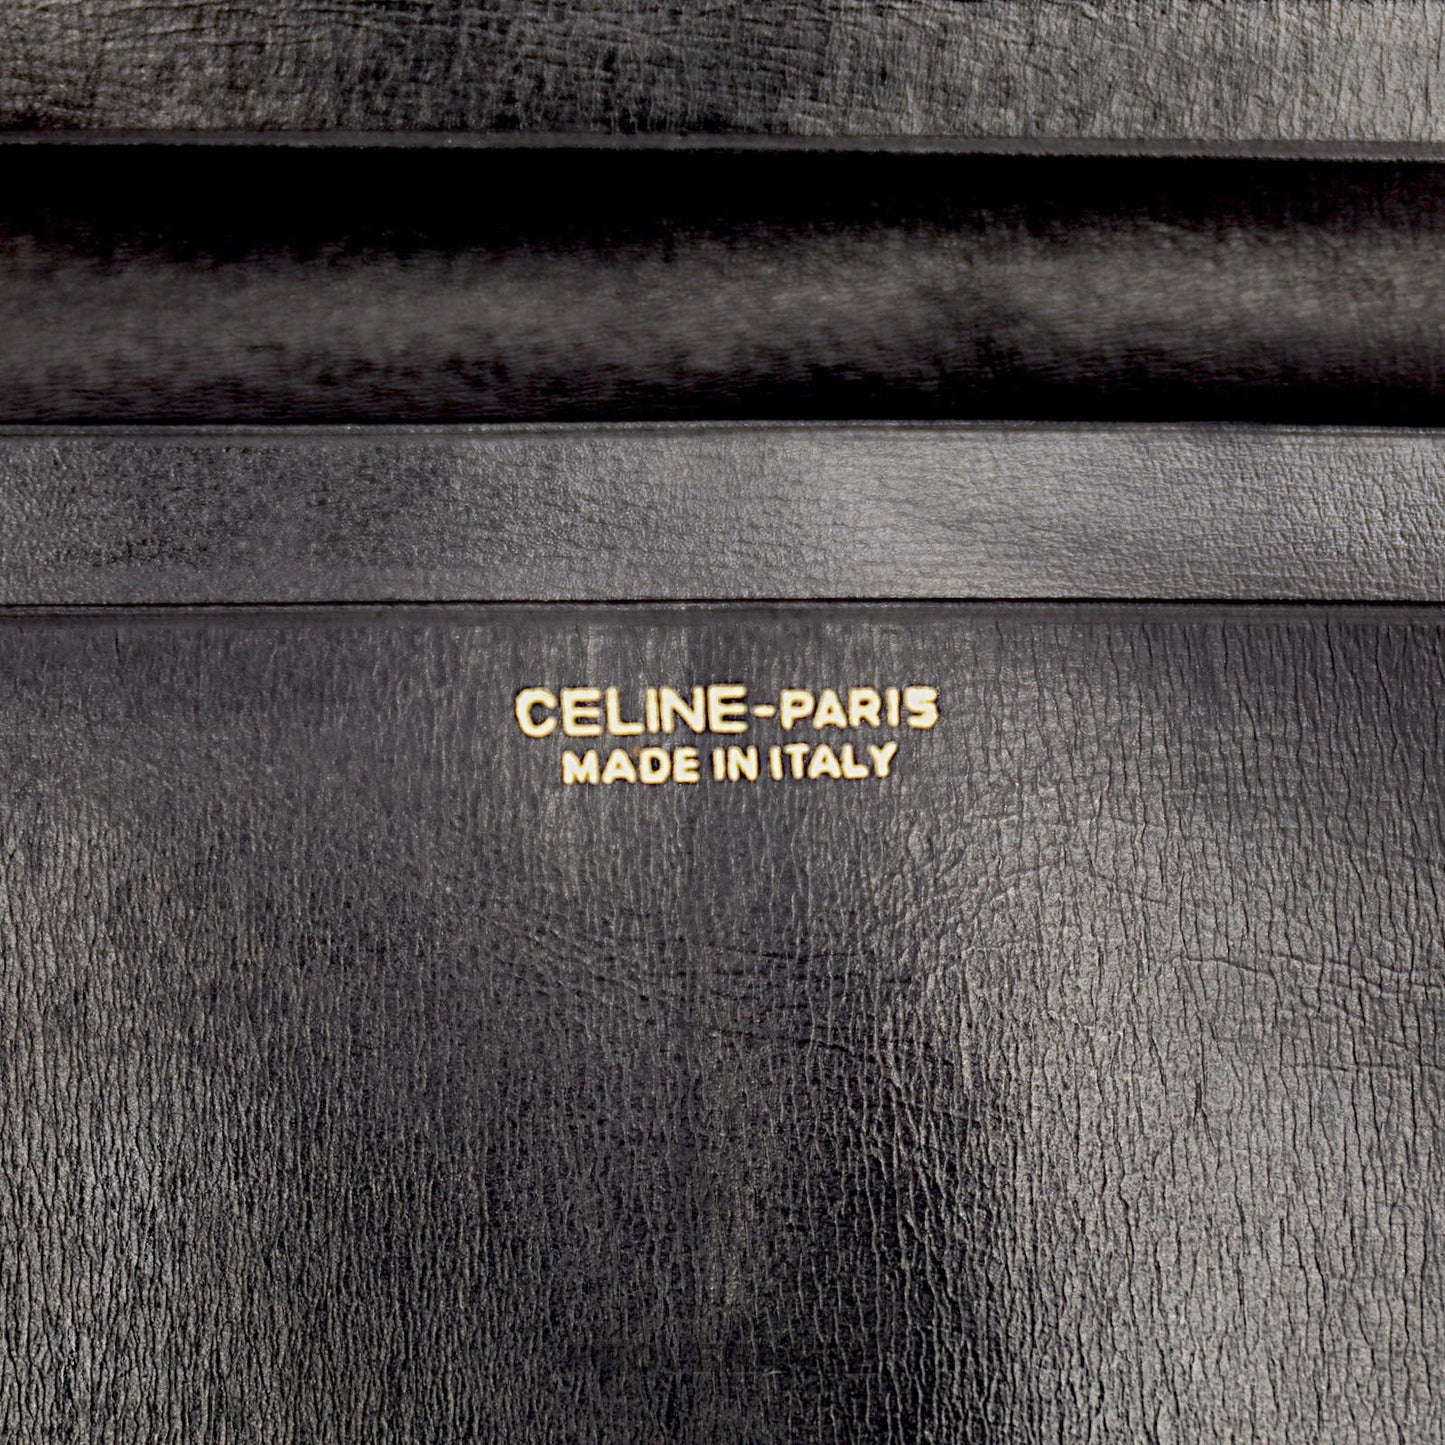 🔴 Celine Crest Long Wallet - Black Calf Leather